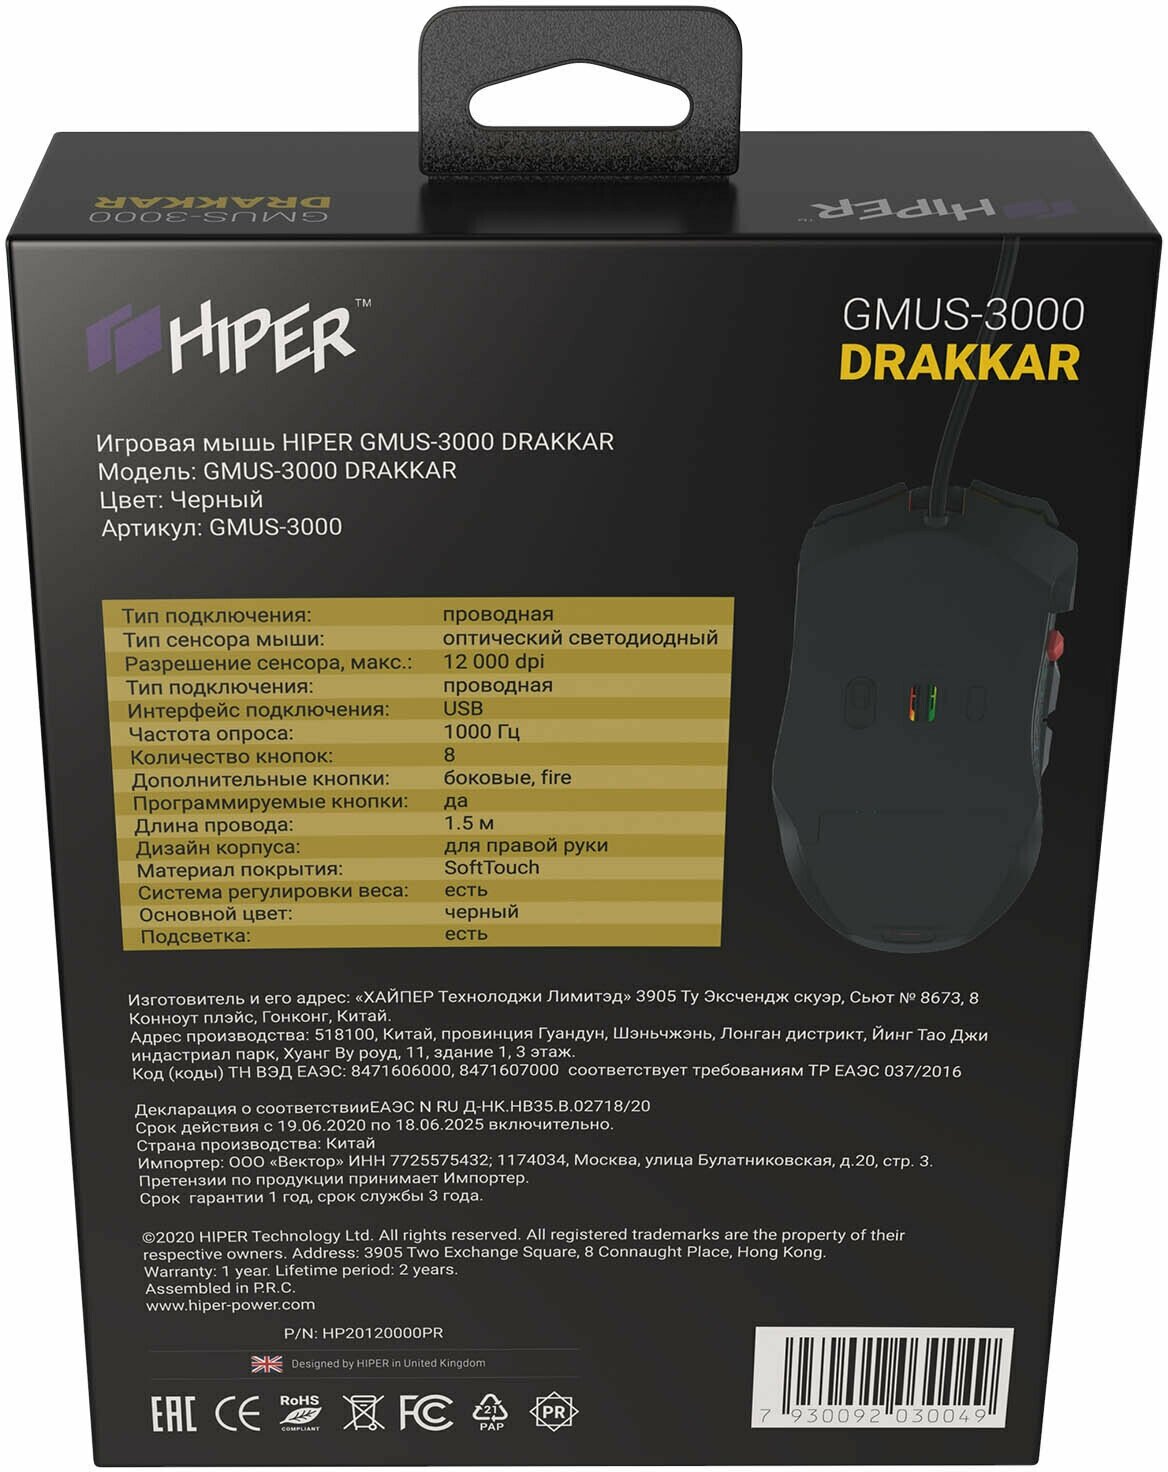 Мышь HIPER Drakkar GMUS-3000